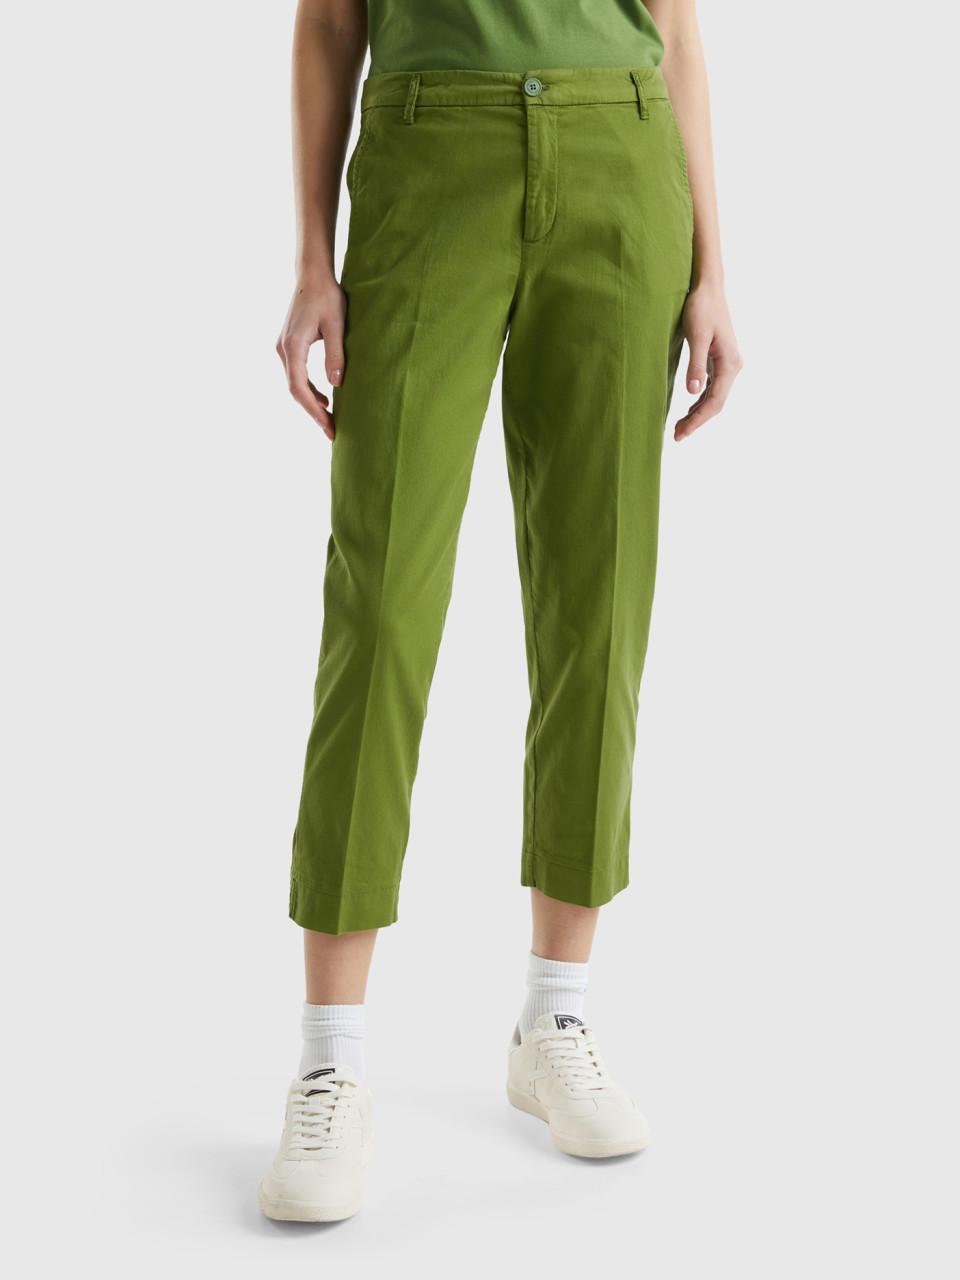 Benetton, Pantalones Chinos Cropped De Algodón Elástico, Militar, Mujer